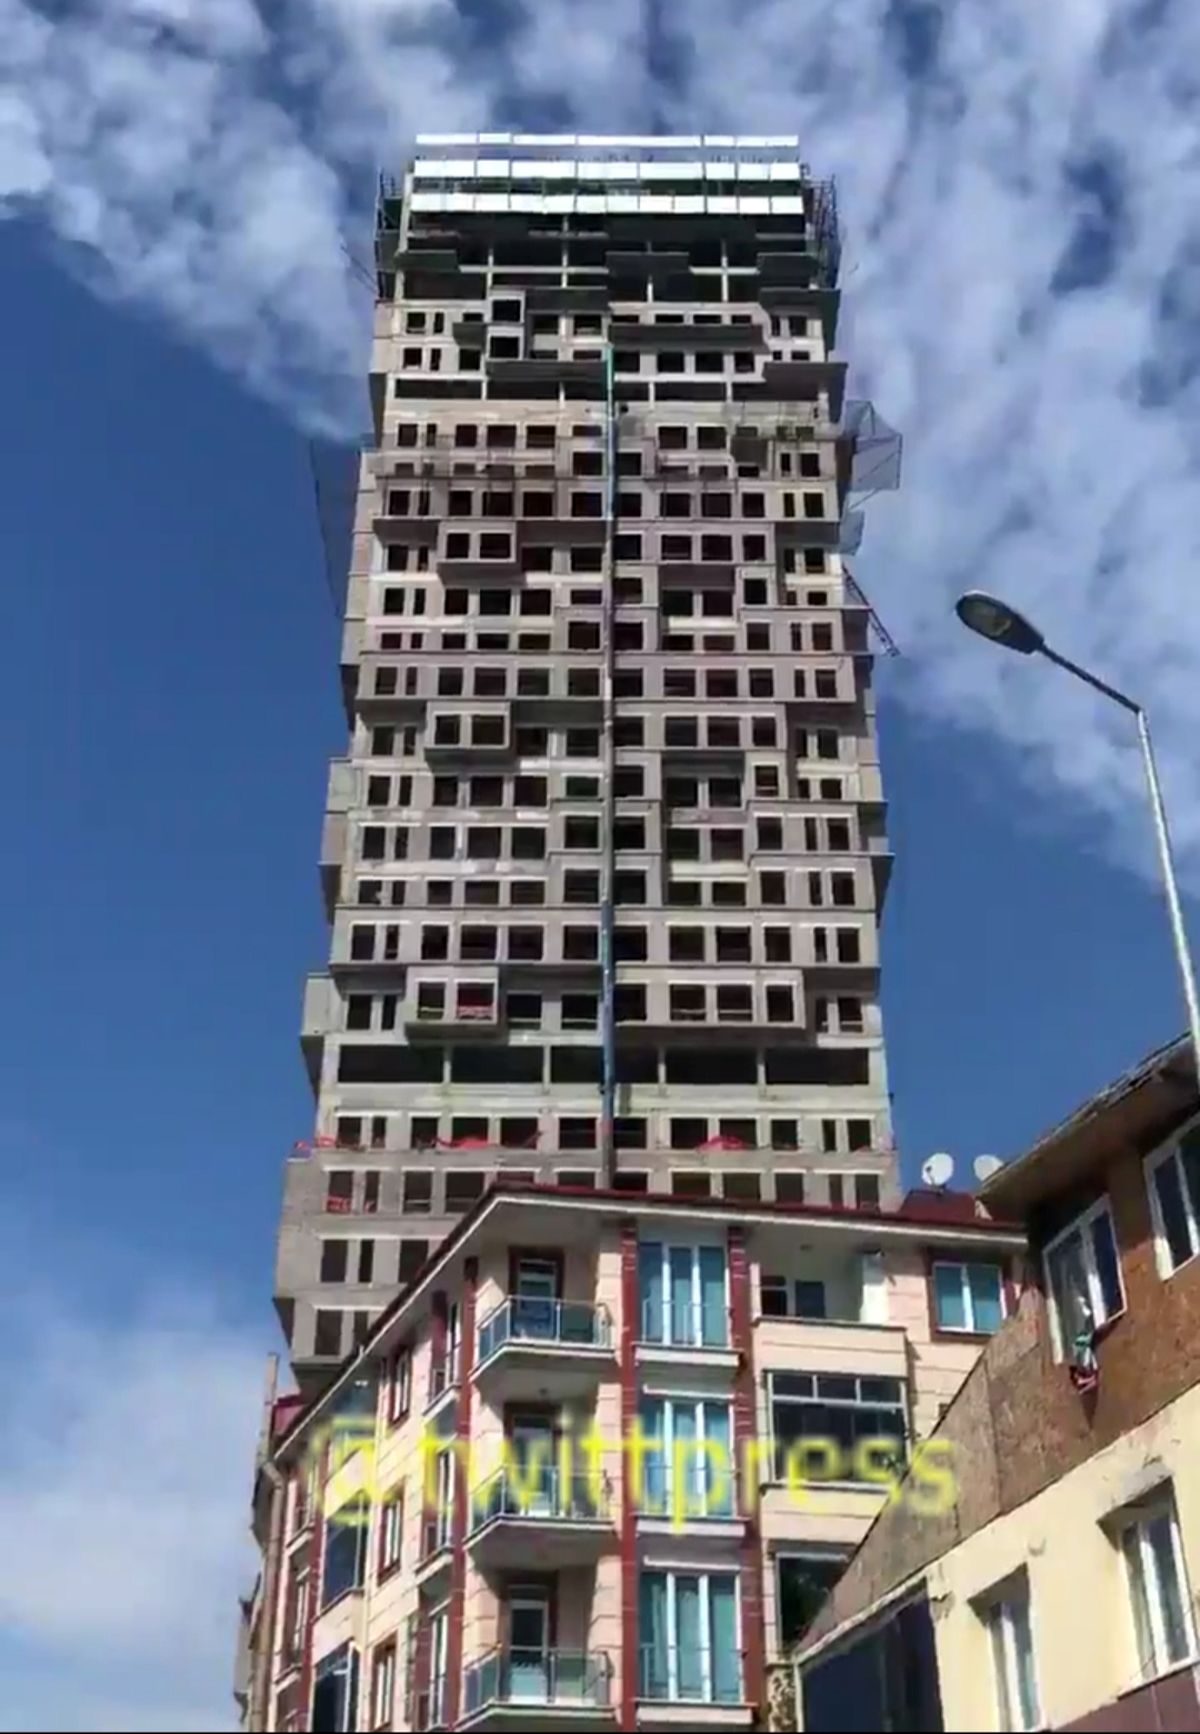 فیلم| برج مسکونی در حال ساخت در استانبول که زلزله را پس زد!